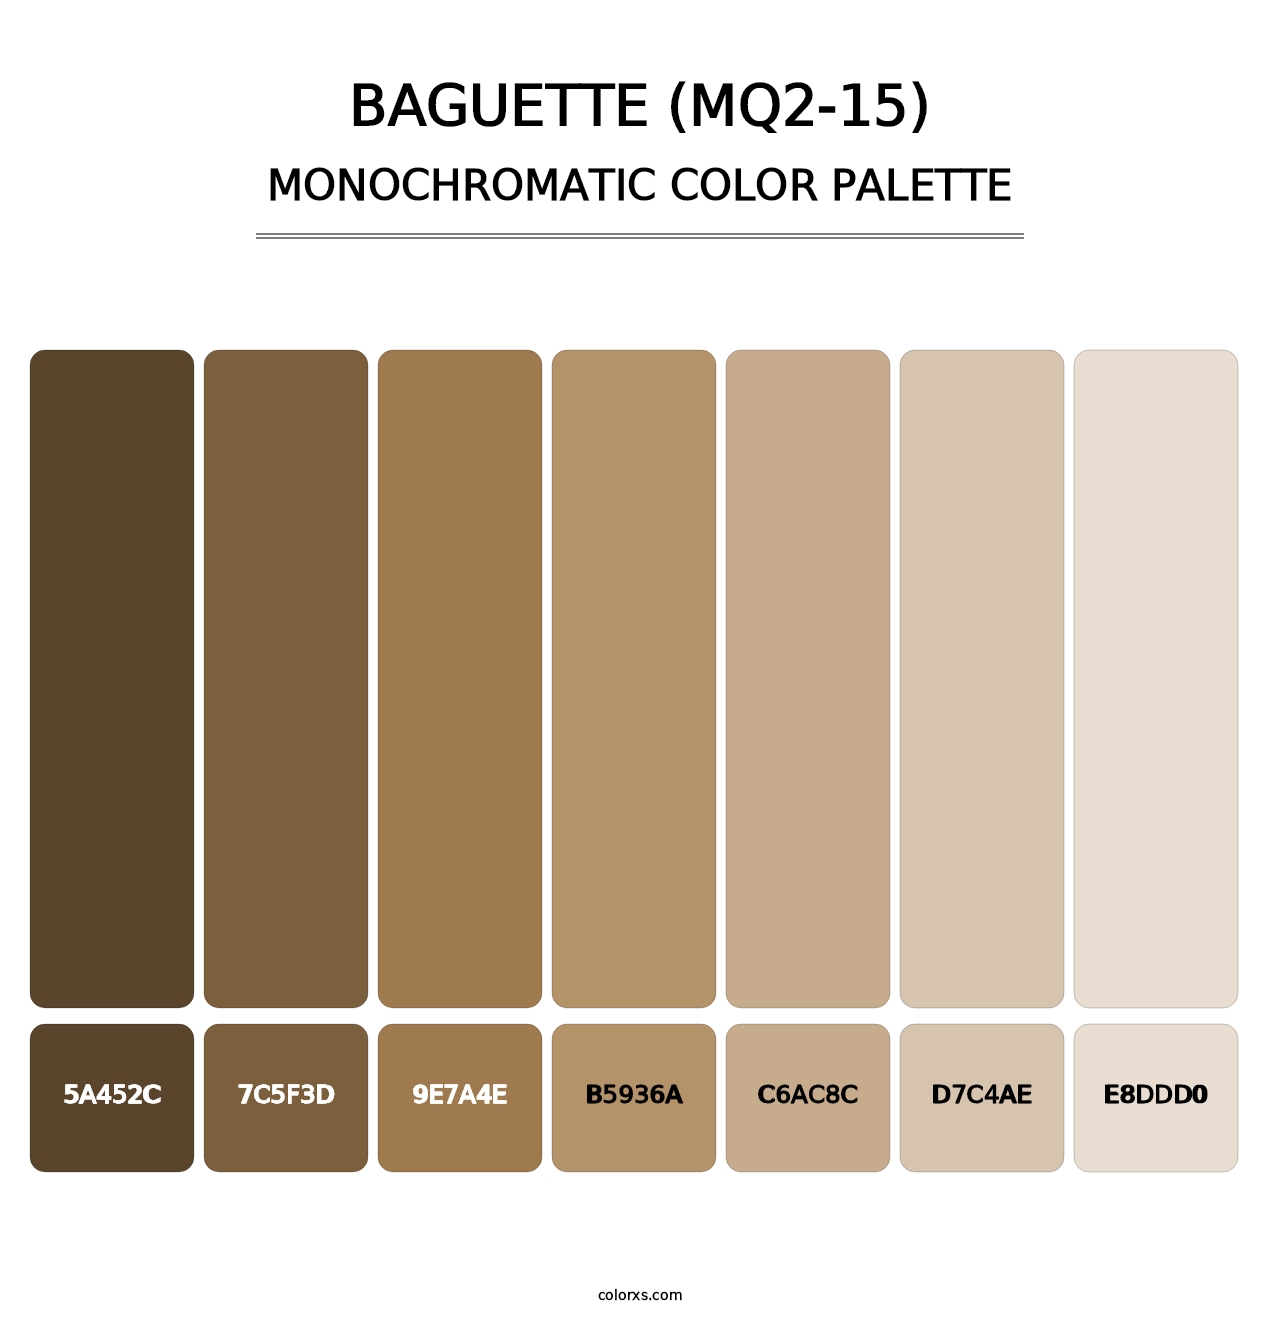 Baguette (MQ2-15) - Monochromatic Color Palette